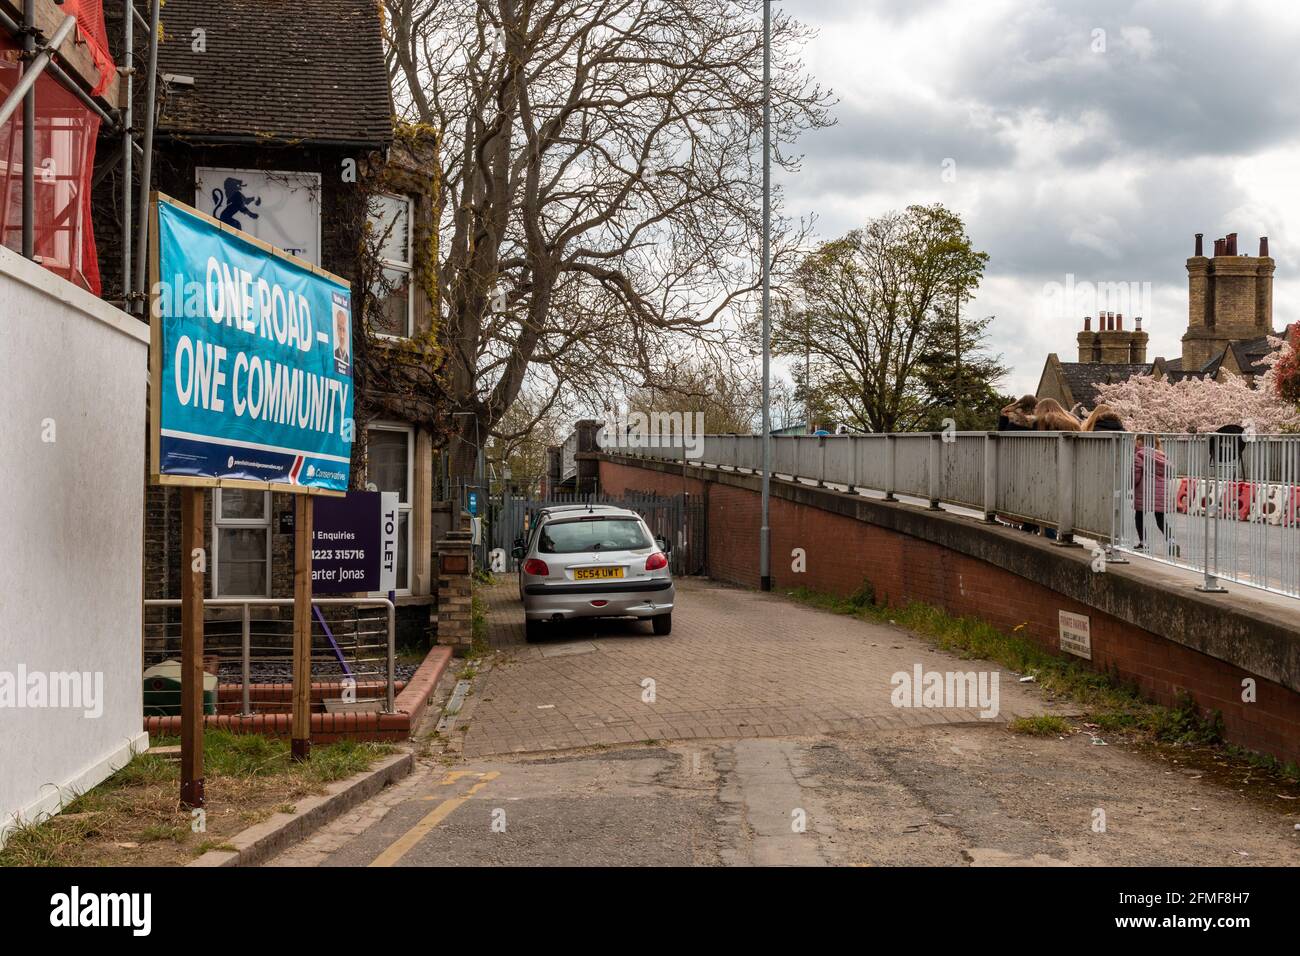 Ein lokaler Wahlkampf der konservativen Partei, der neben der Mill Road Bridge hortet. Der Slogan lautet: Eine Straße, eine Gemeinschaft. Mill Road, Cambridge, Großbritannien. Stockfoto